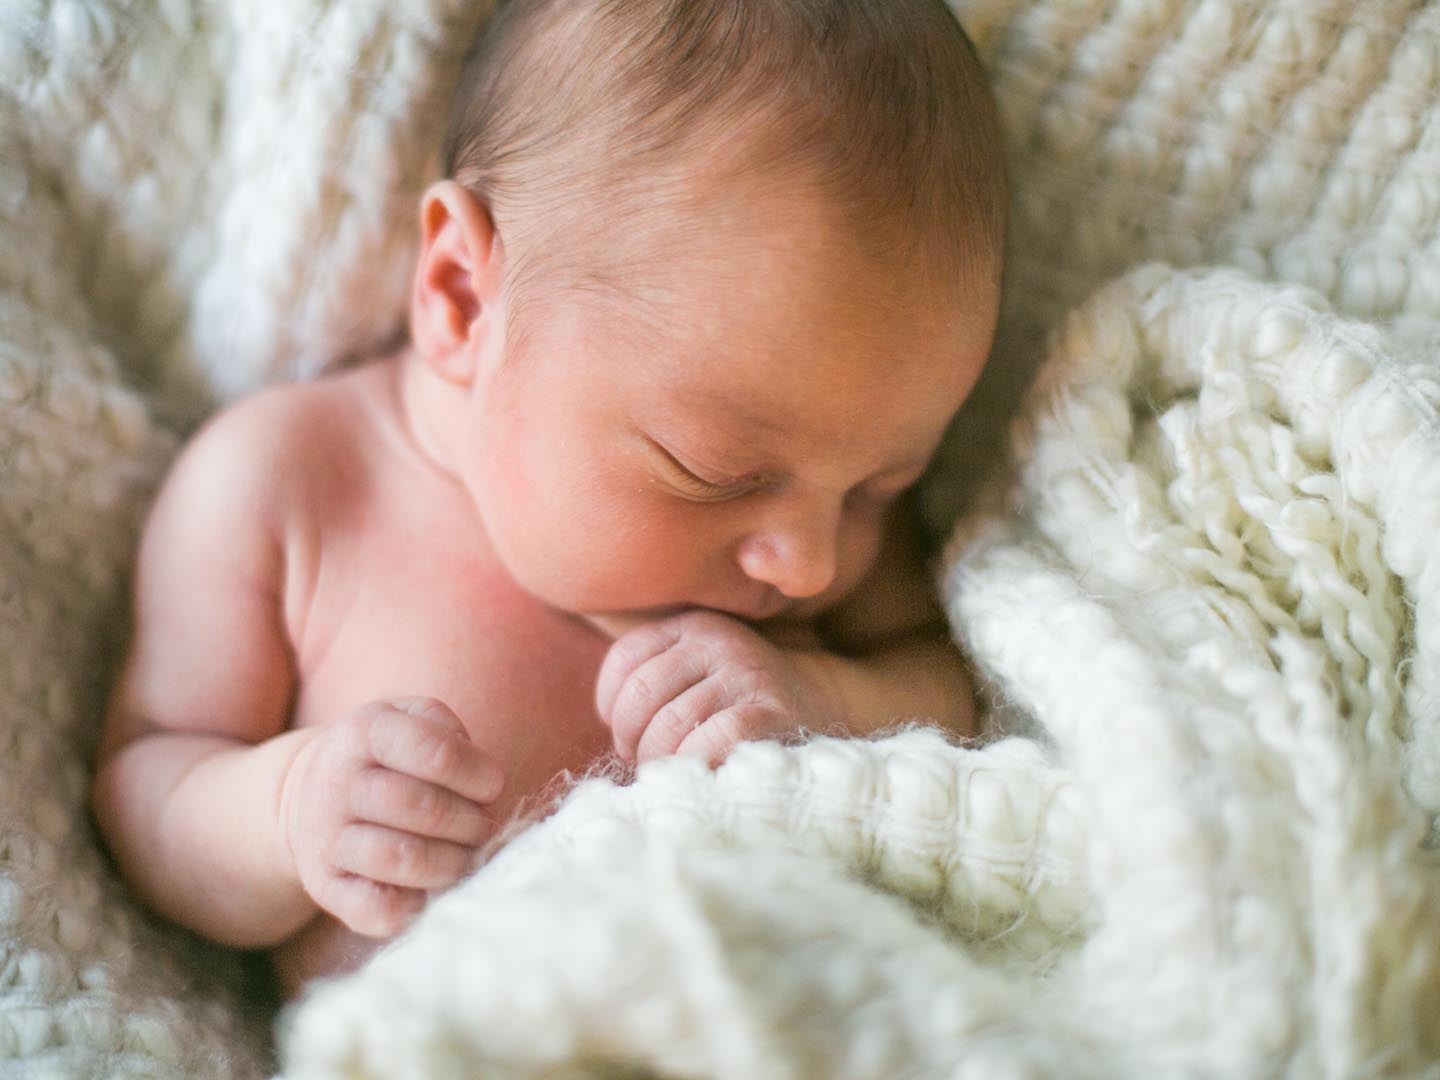 刚出生一周的小男孩裹着白色的毛绒毯子睡觉。他很平静，手放在嘴边。